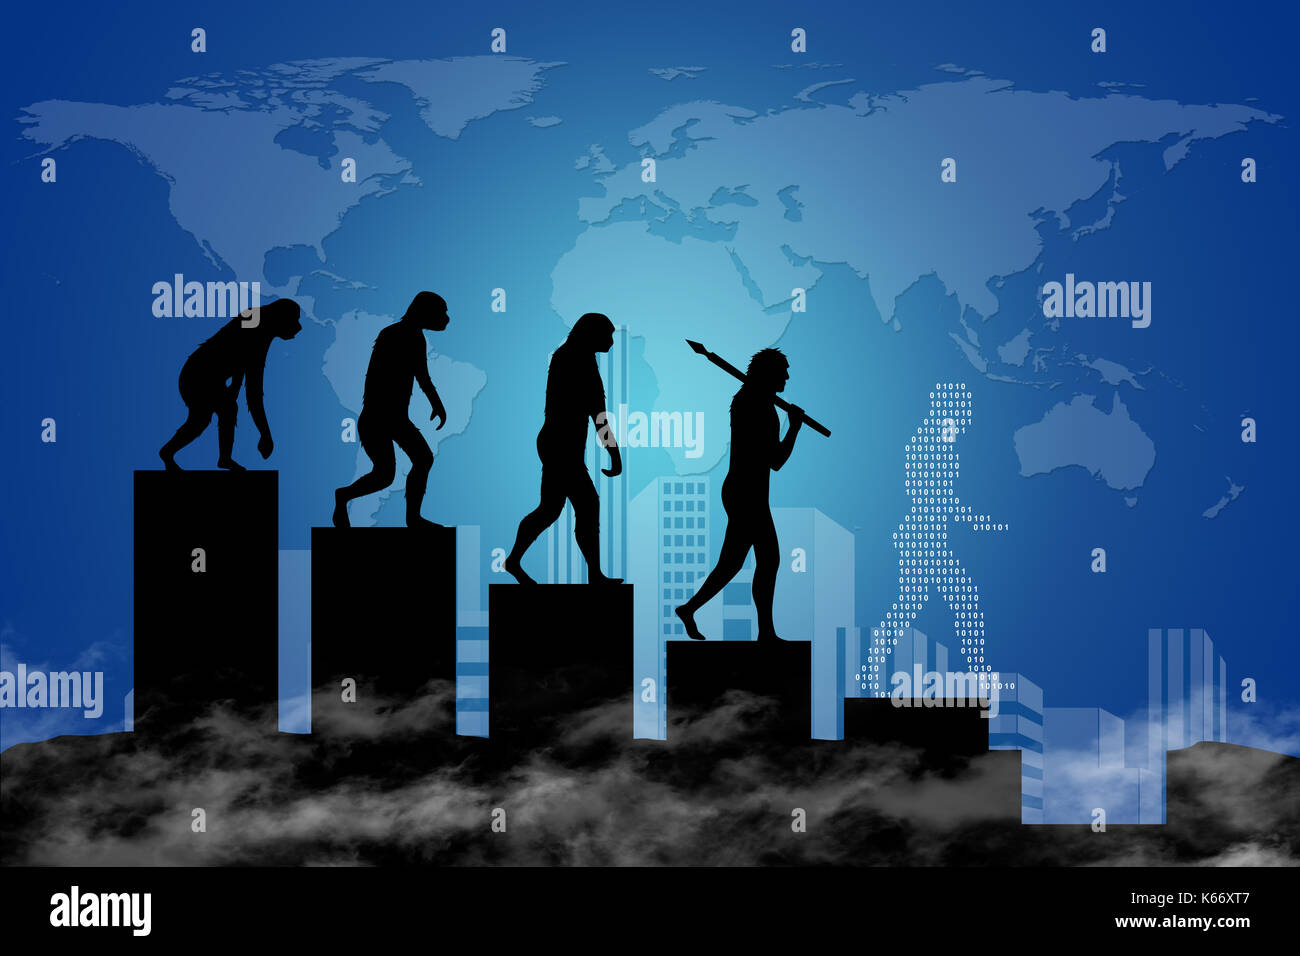 Die Evolution des Menschen in einer modernen Welt der digitalen Technologie. Stadt-Scape und die Weltkarte im Hintergrund. Stockfoto